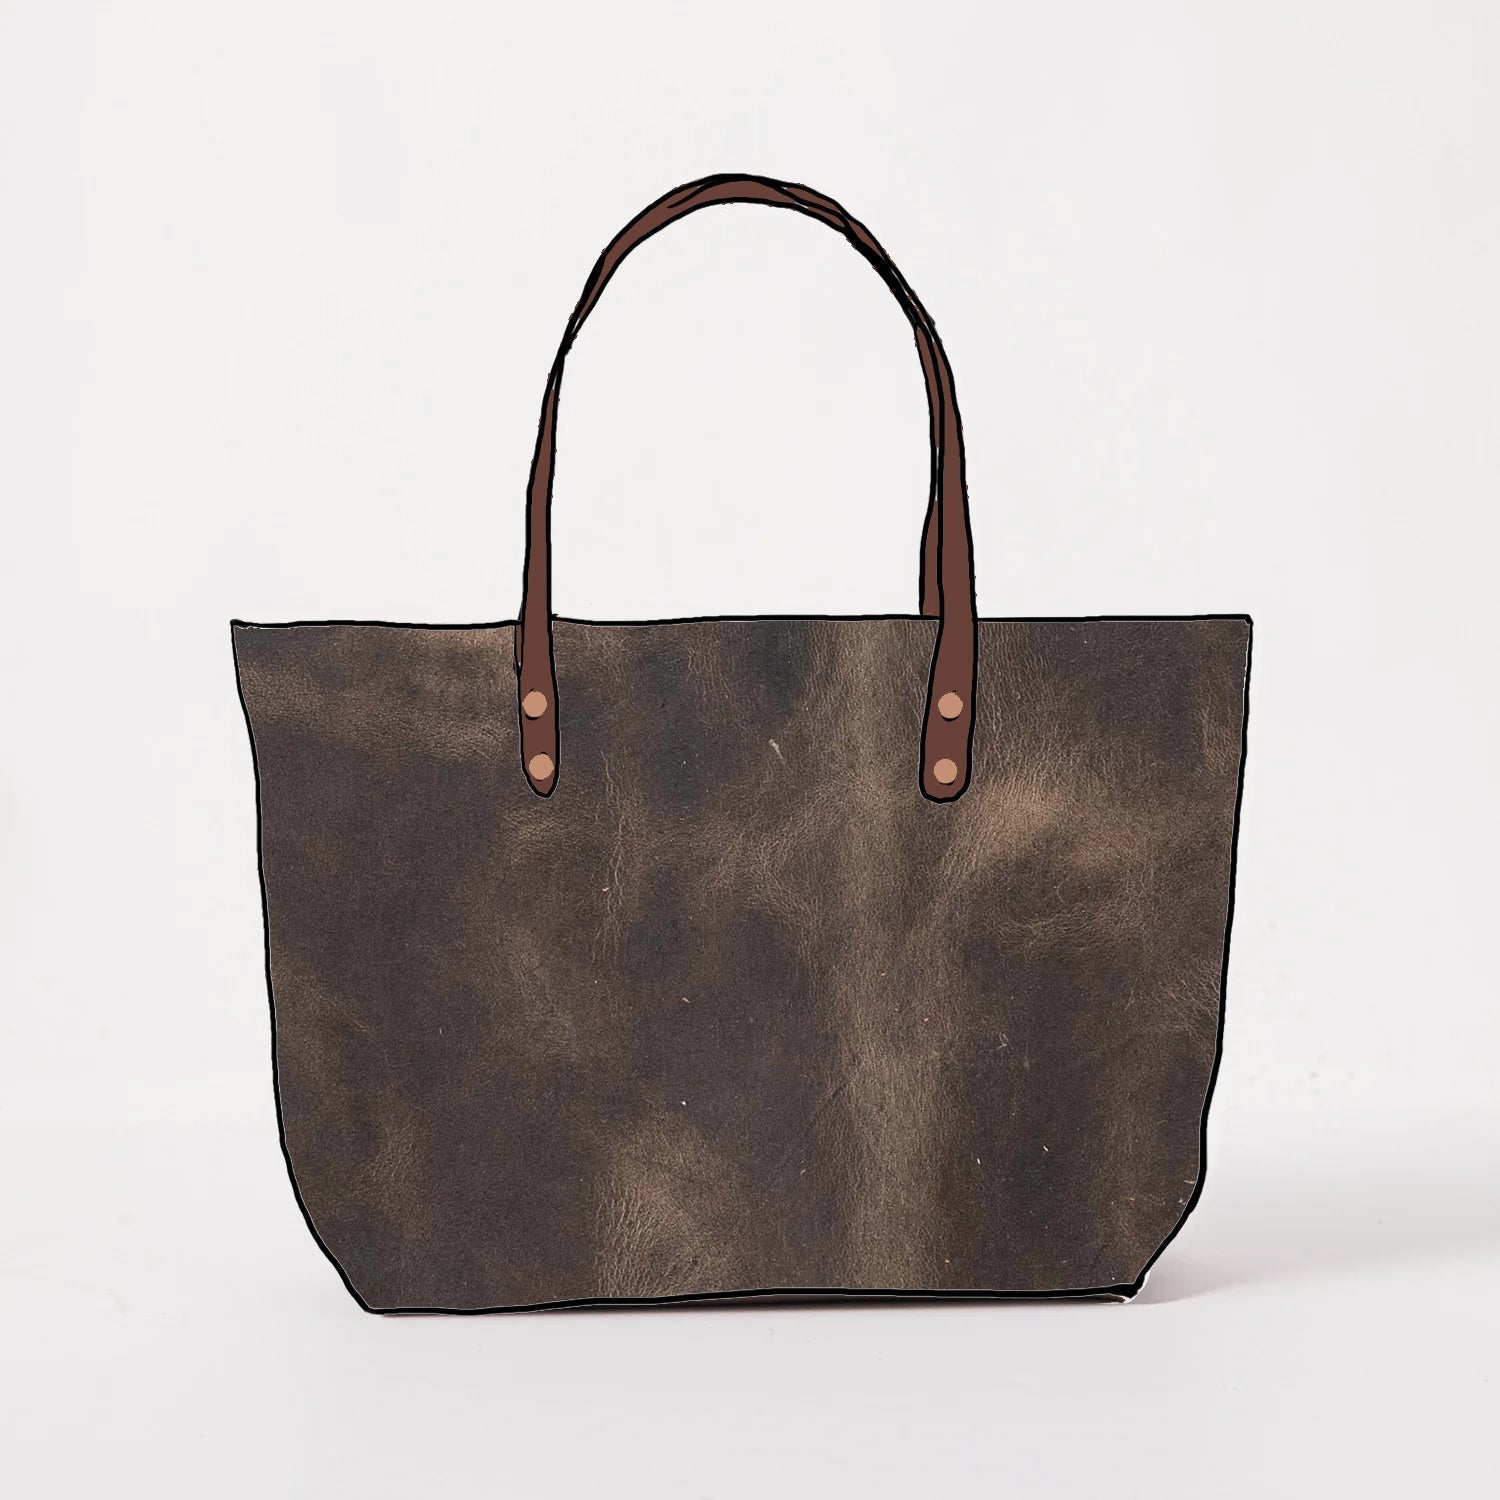 Storm Grey East West Tote- grey handbag handmade in America